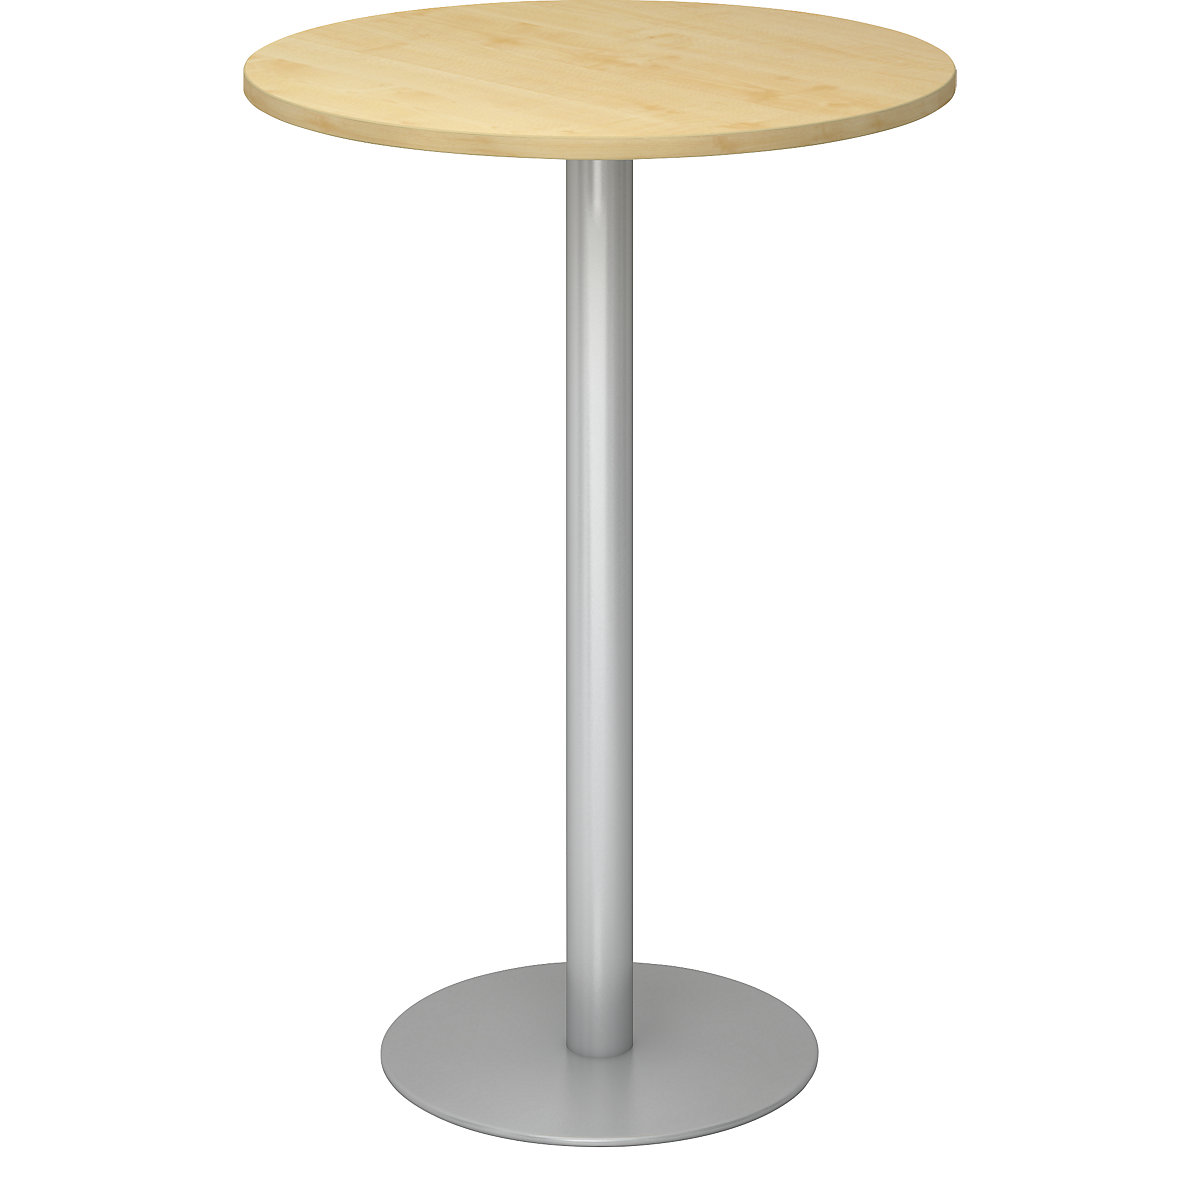 Barový stůl, Ø 800 mm, výška 1116 mm, stříbrný podstavec, deska javorový dekor